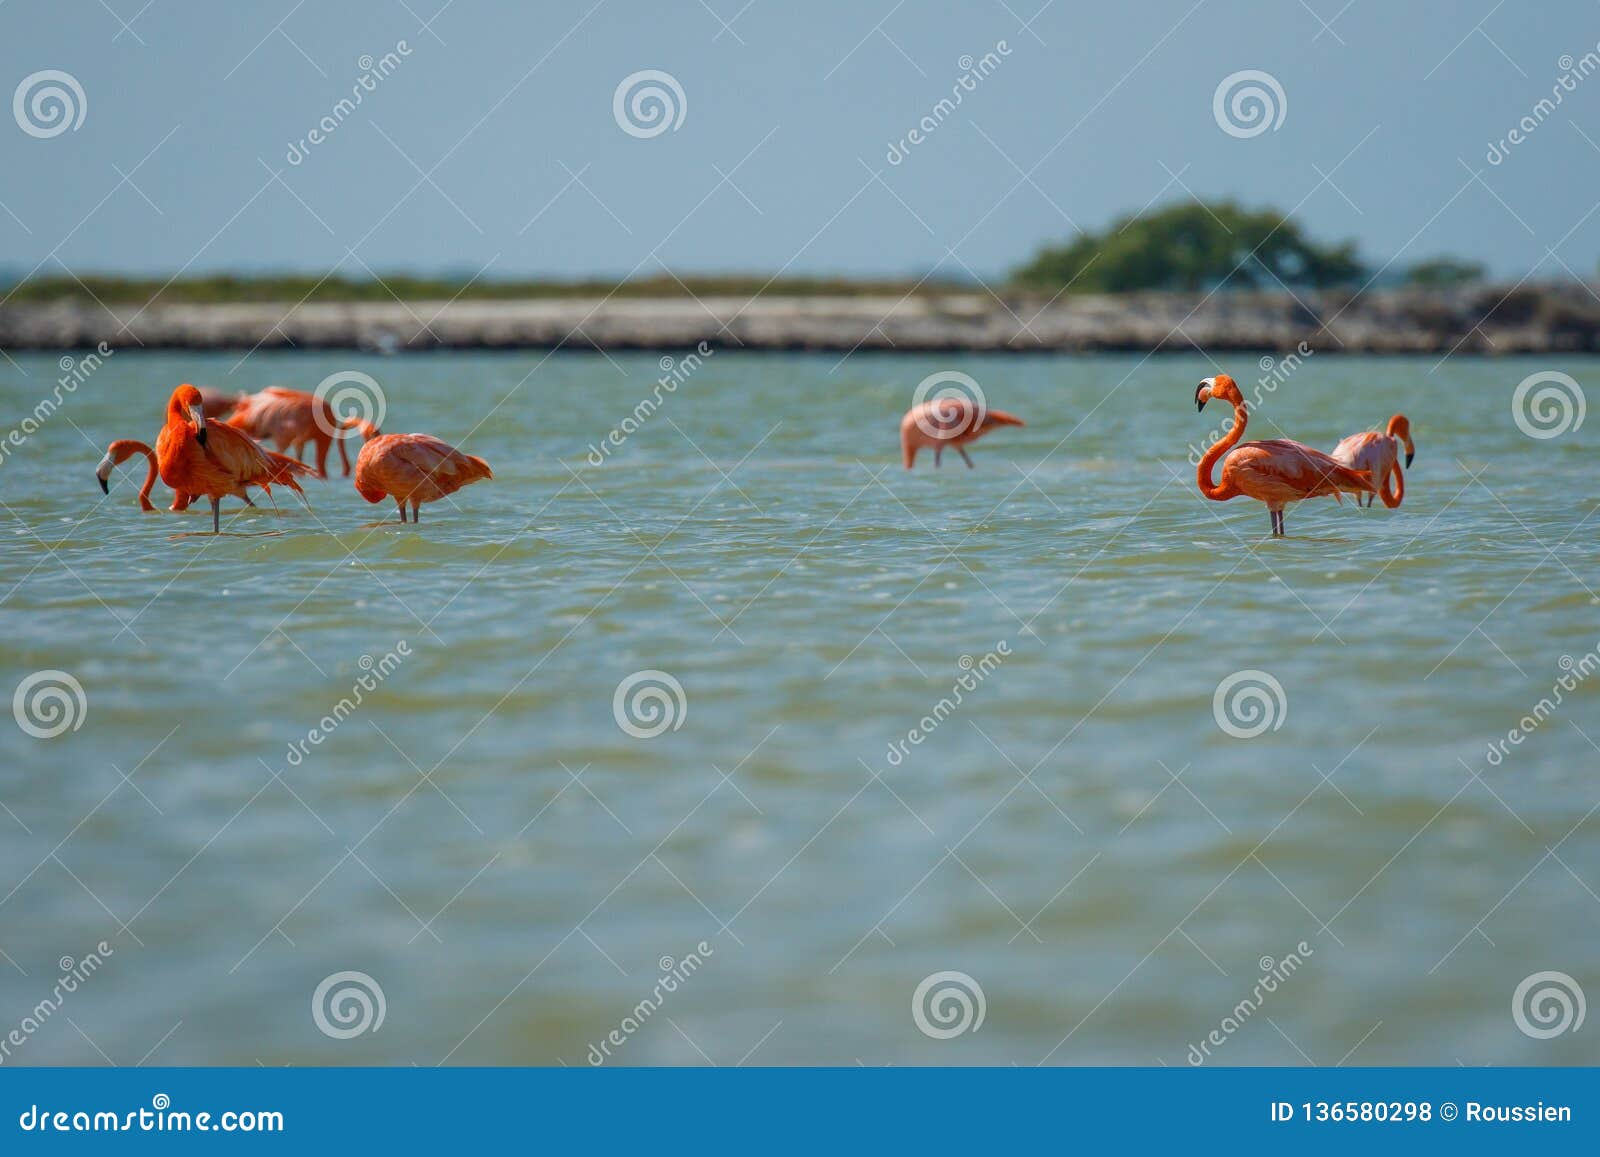 group of pink flamingos in las coloradas in mexico